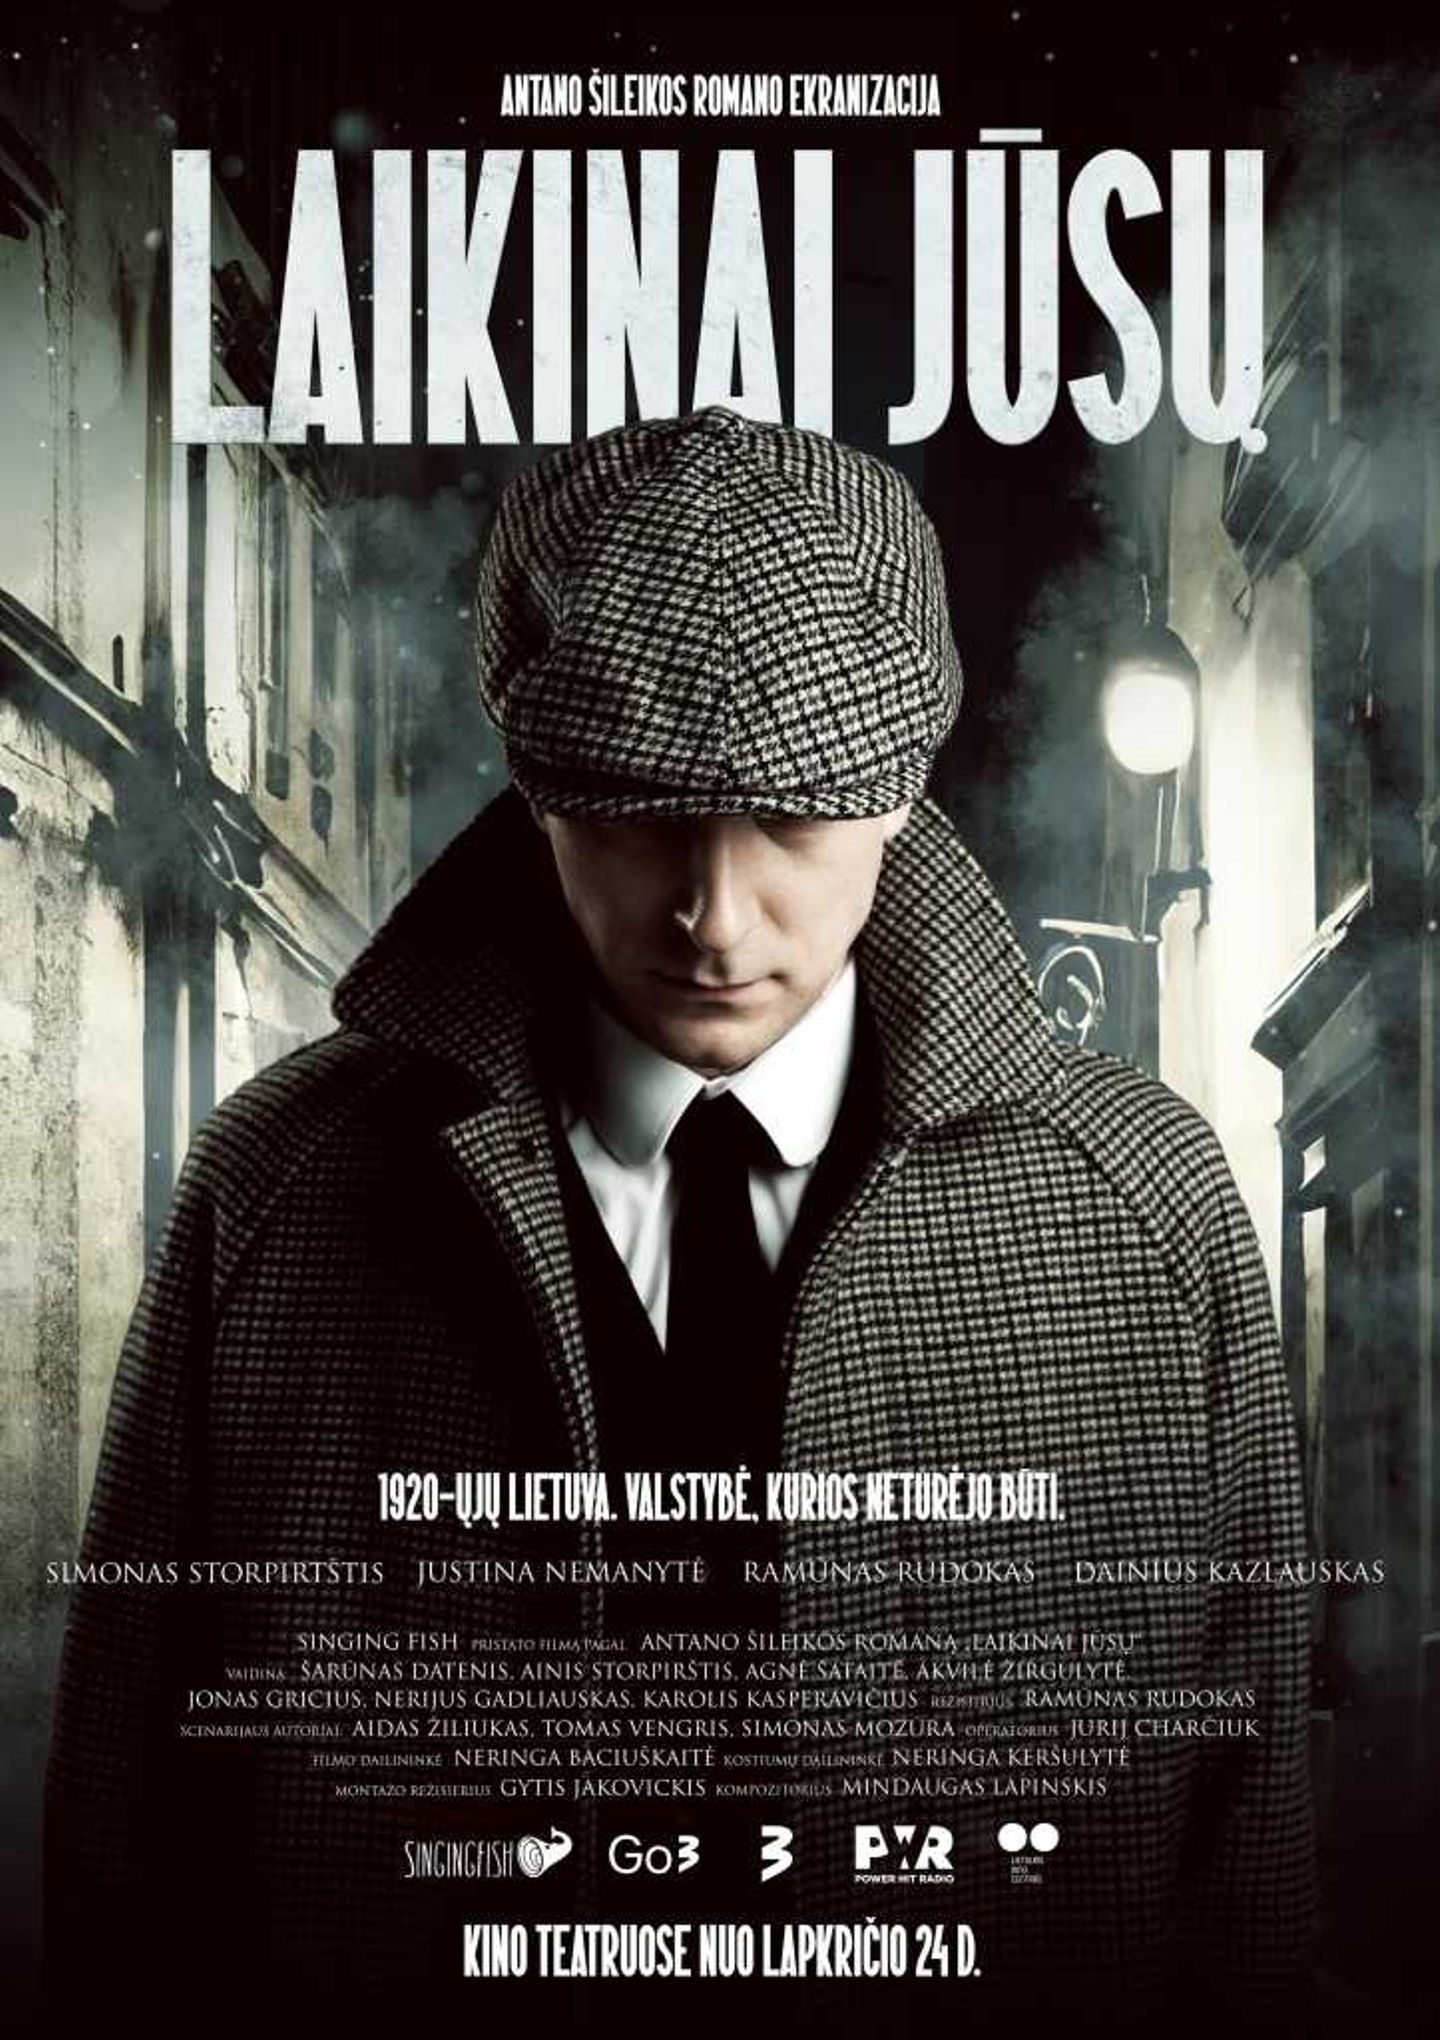 Plakat for 'Laikinai Jusu'